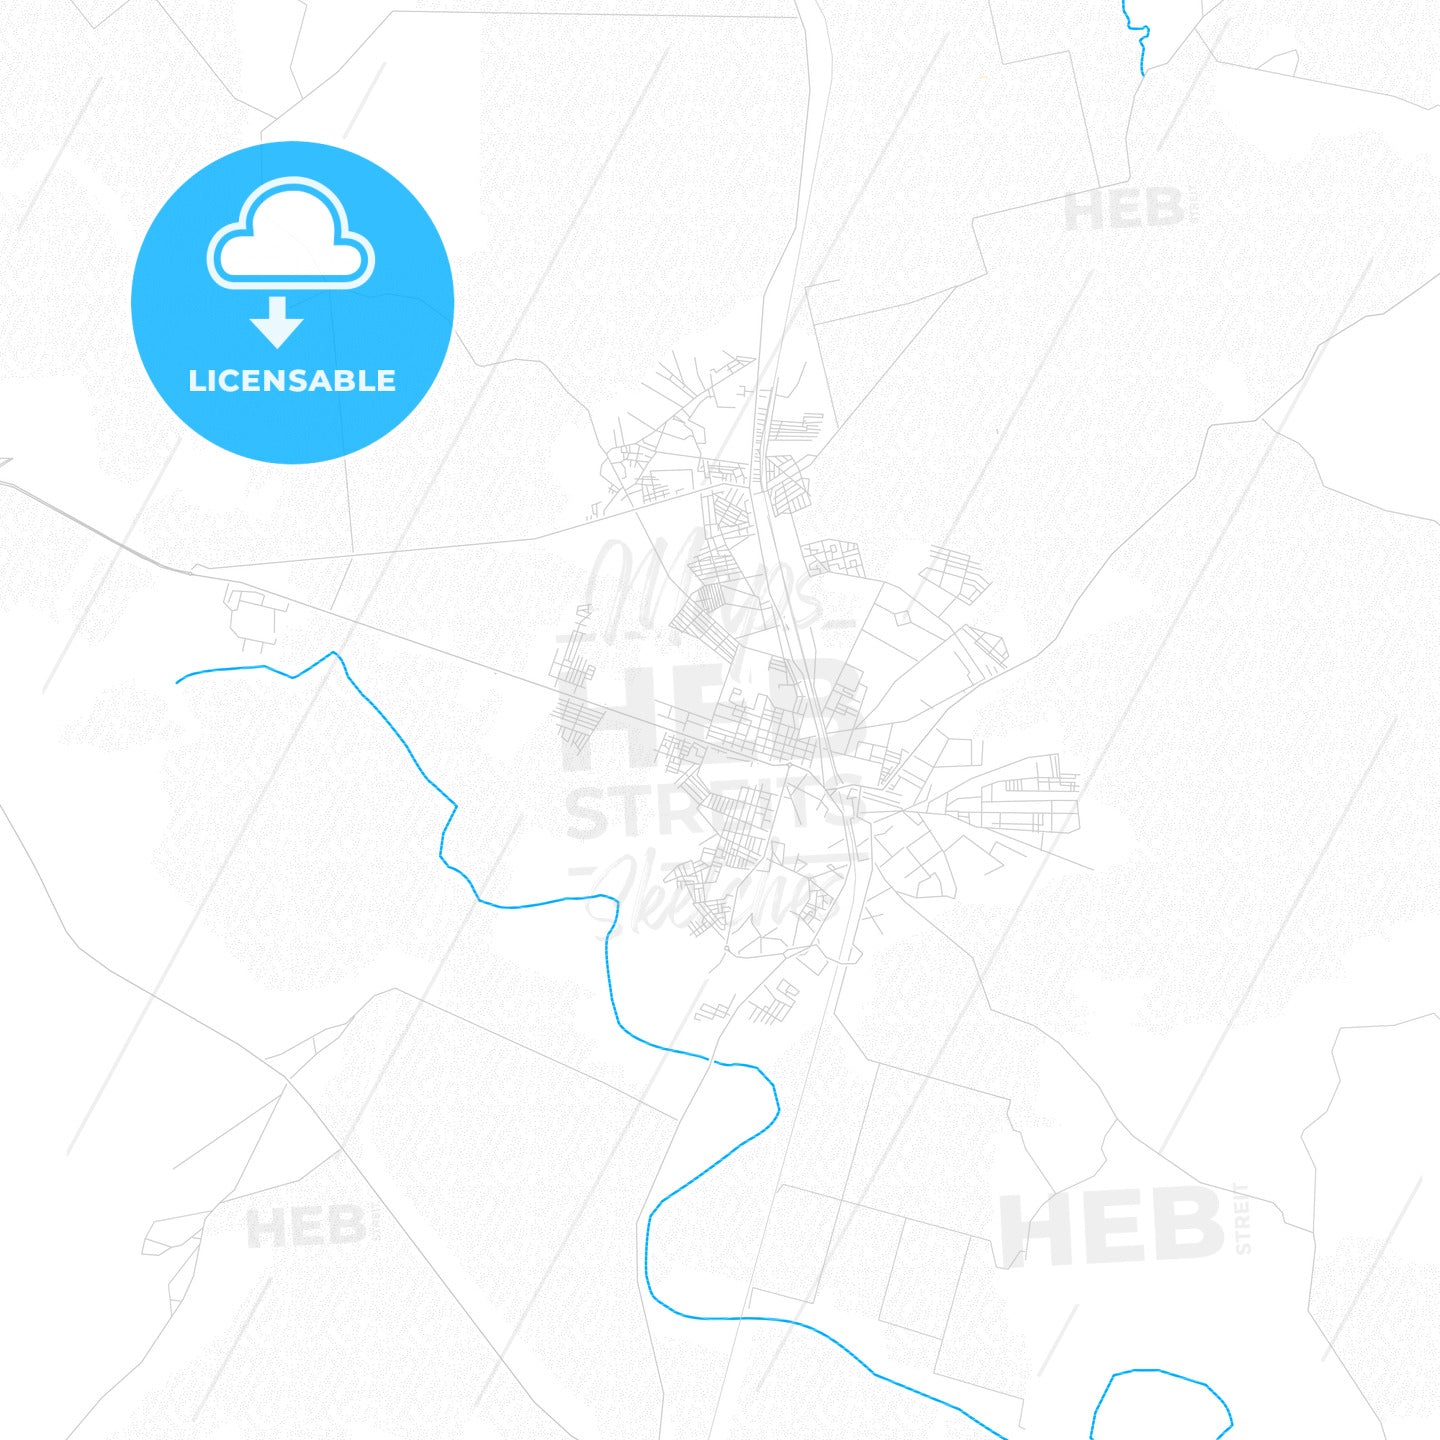 Ksar El Kebir, Morocco PDF vector map with water in focus